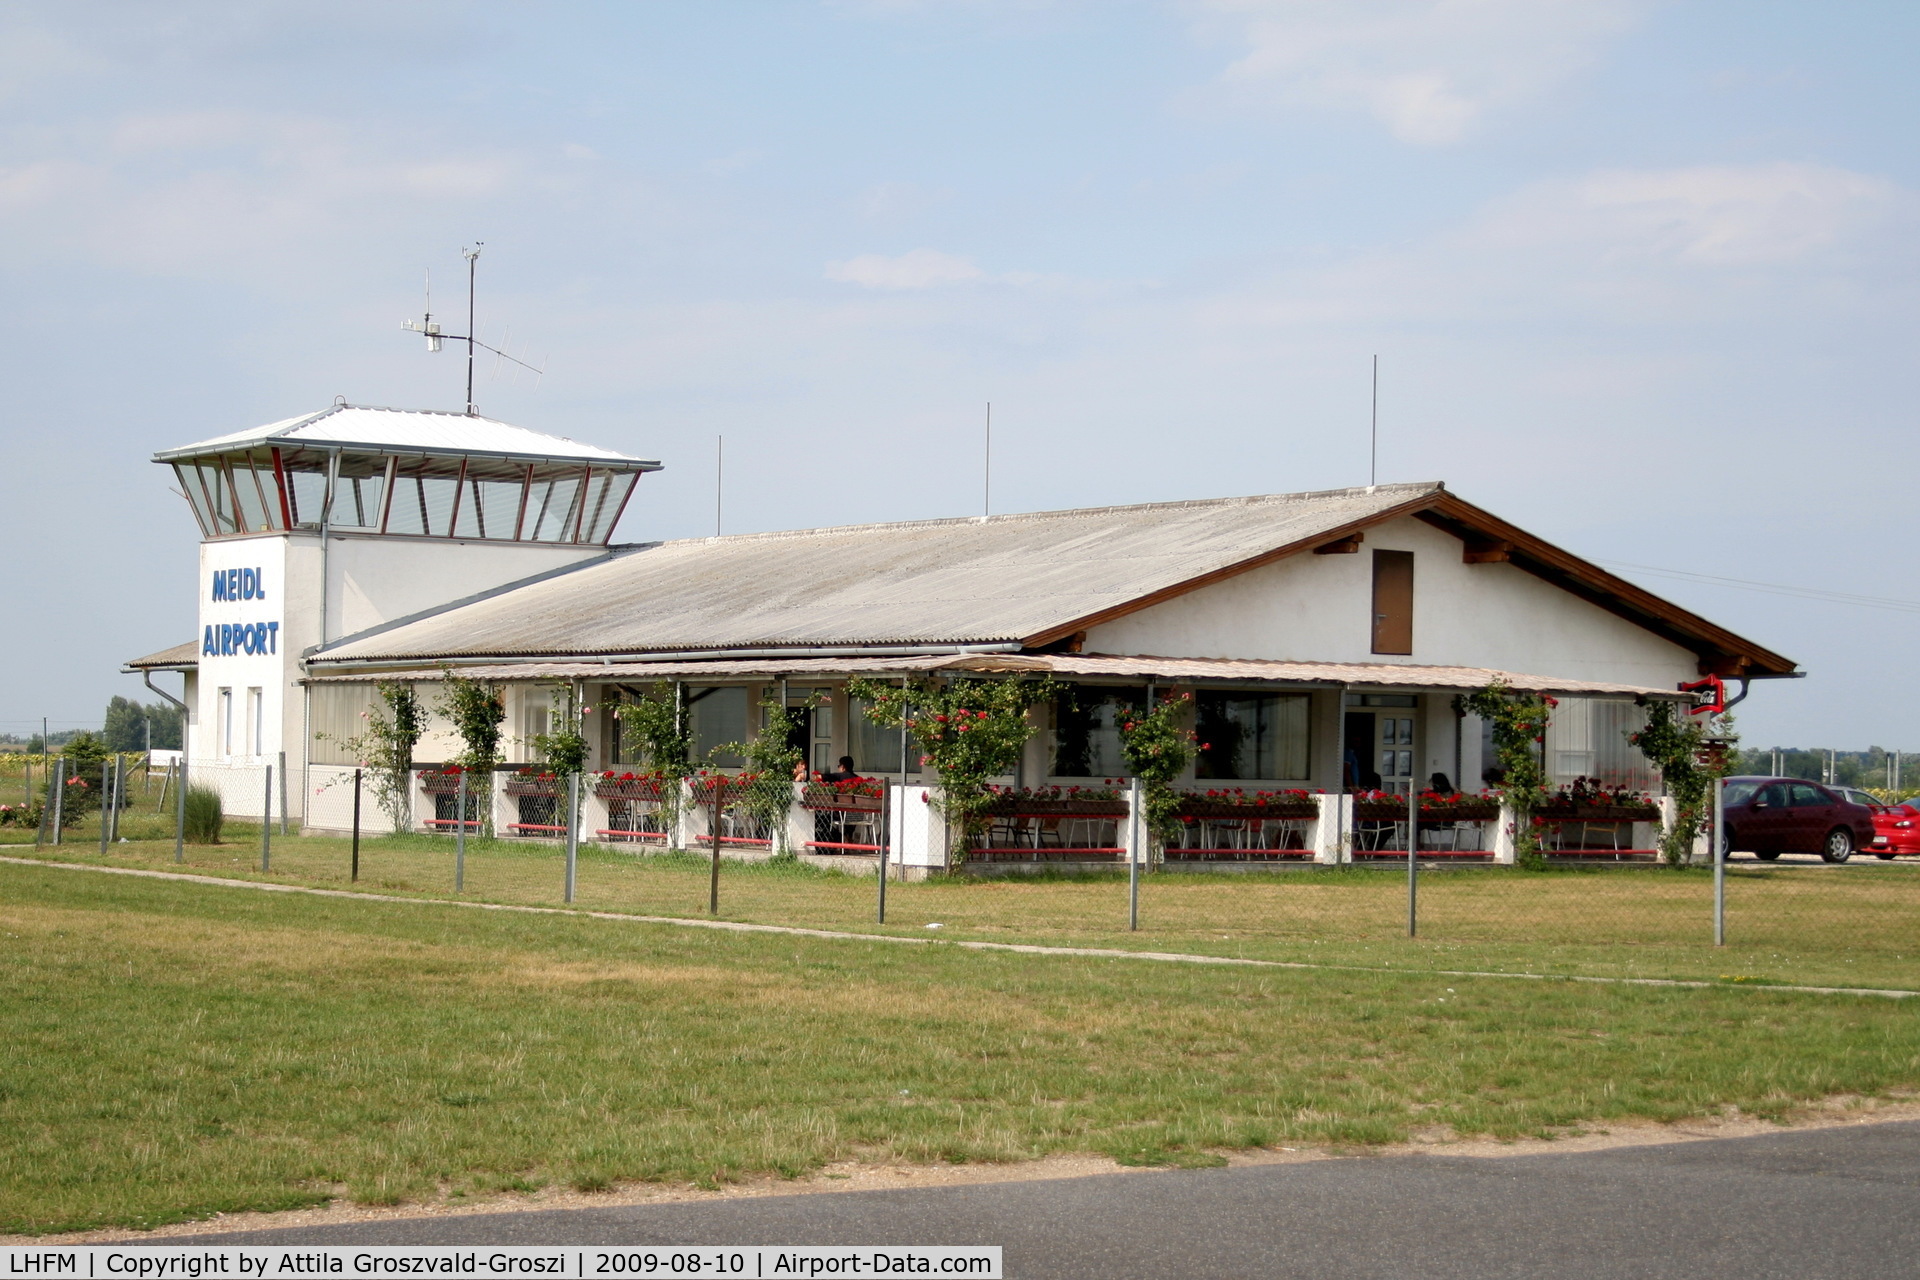 Fert?szentmiklós Airport, Fert?szentmiklós Hungary (LHFM) - Fertöszentmiklos - Meidl Airport / LHFM - Hungary